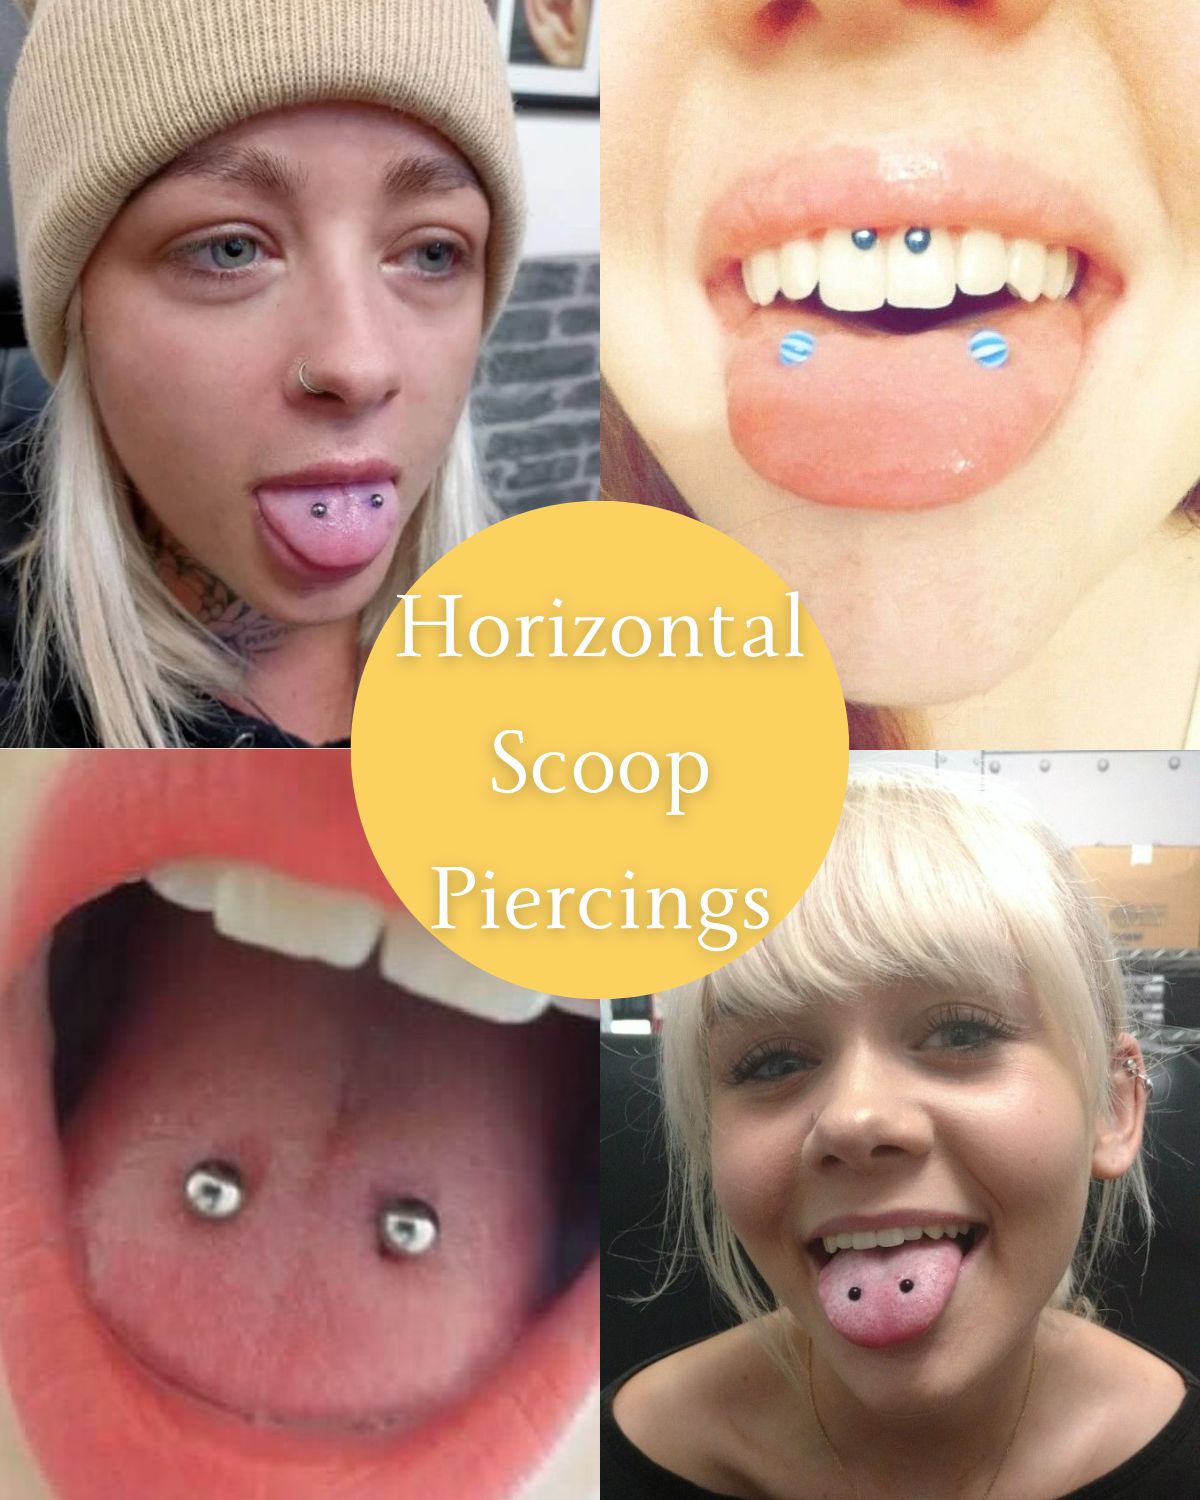 Horizontal tongue piercings